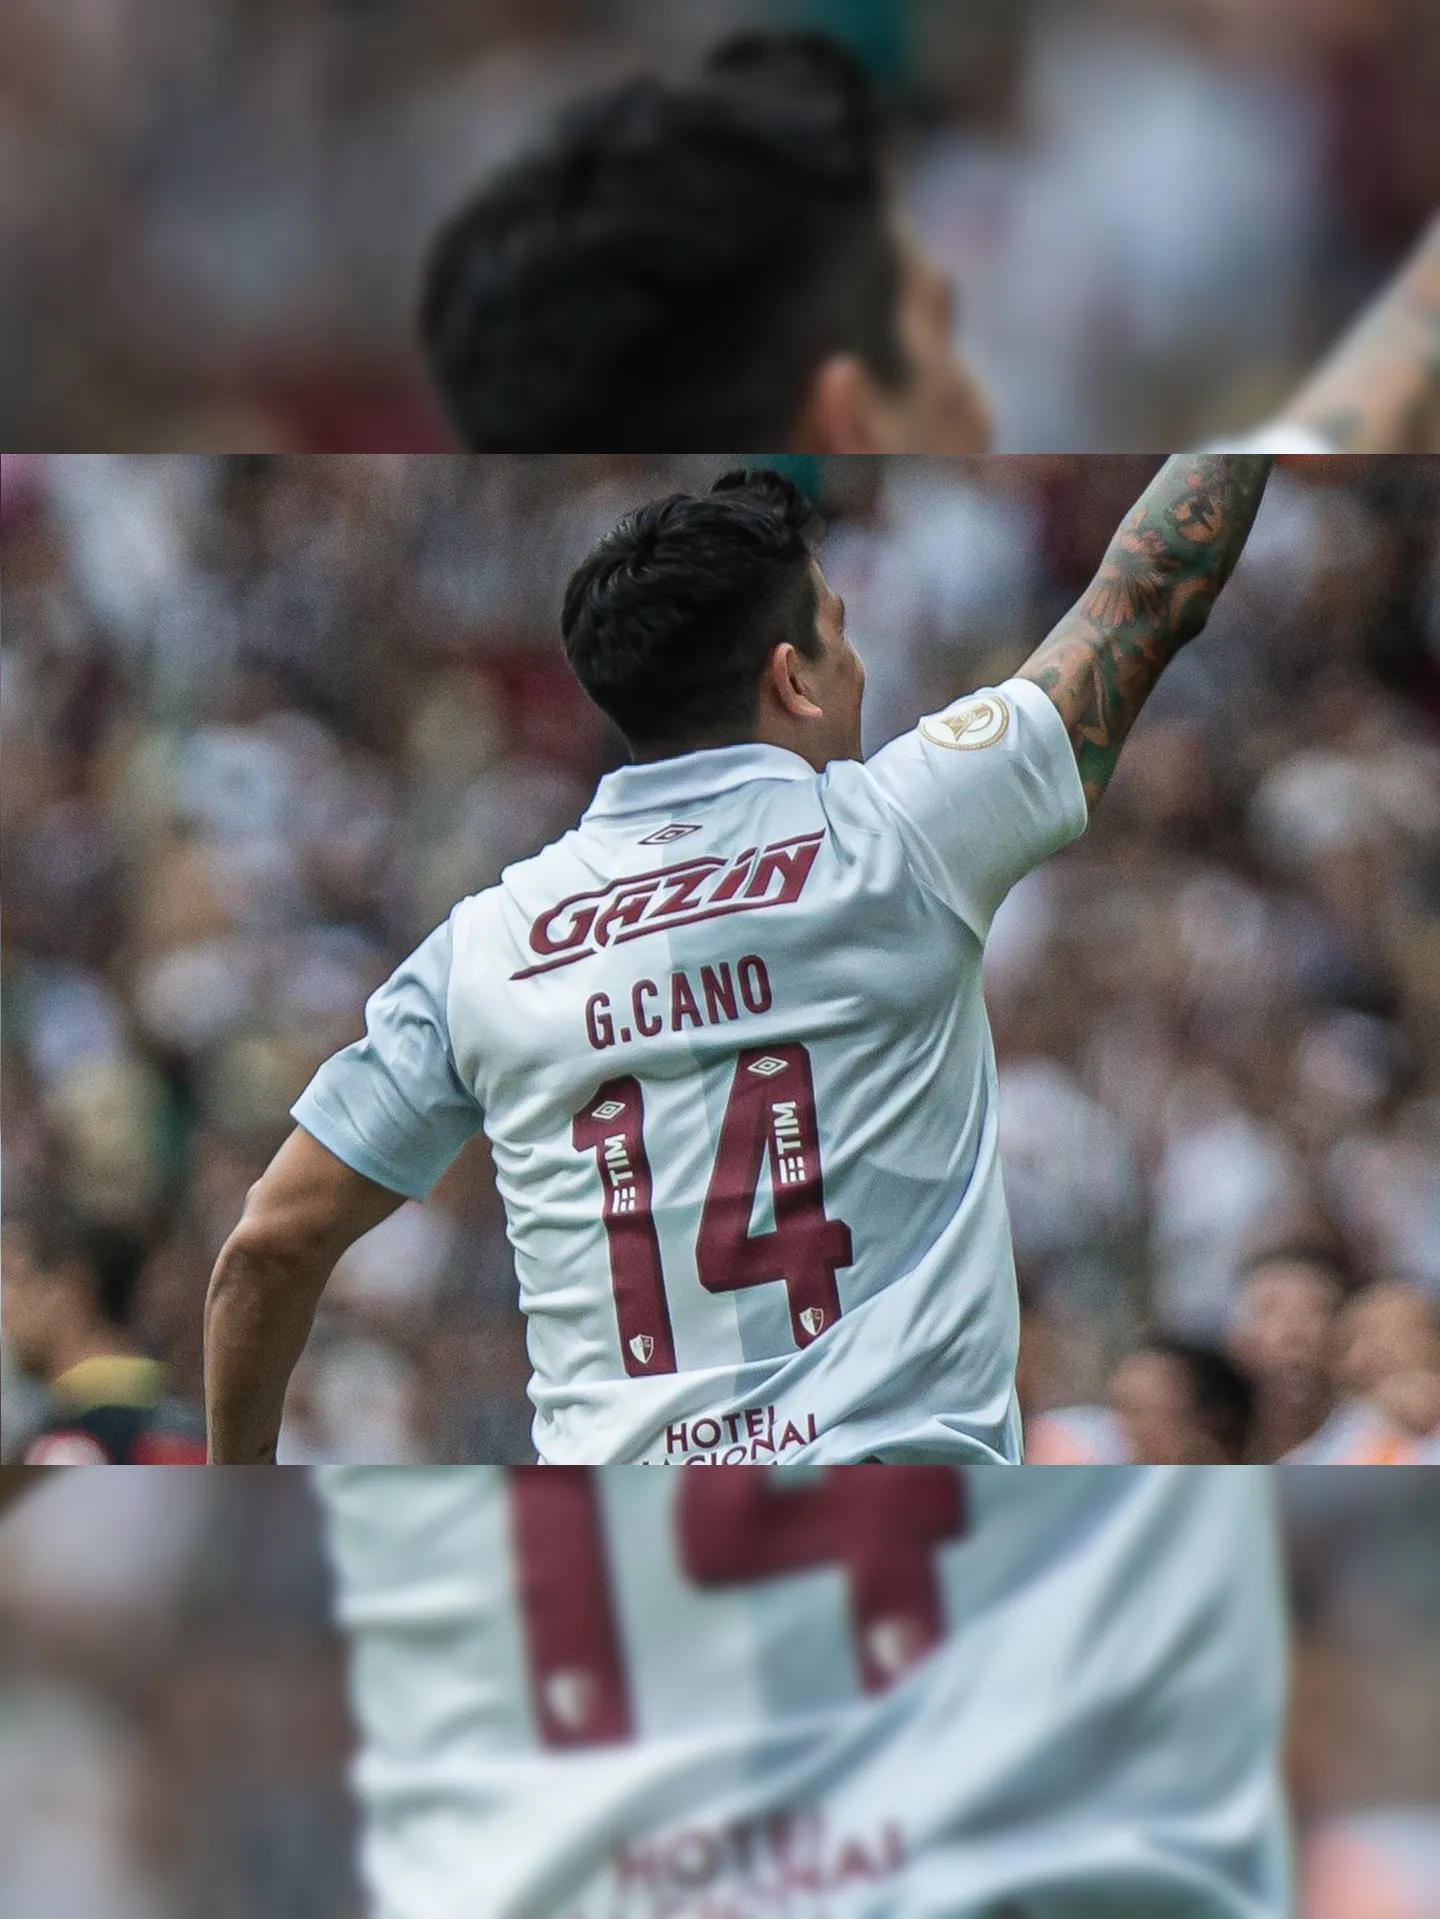 Germán Cano chegou ao 30º gol na temporada.